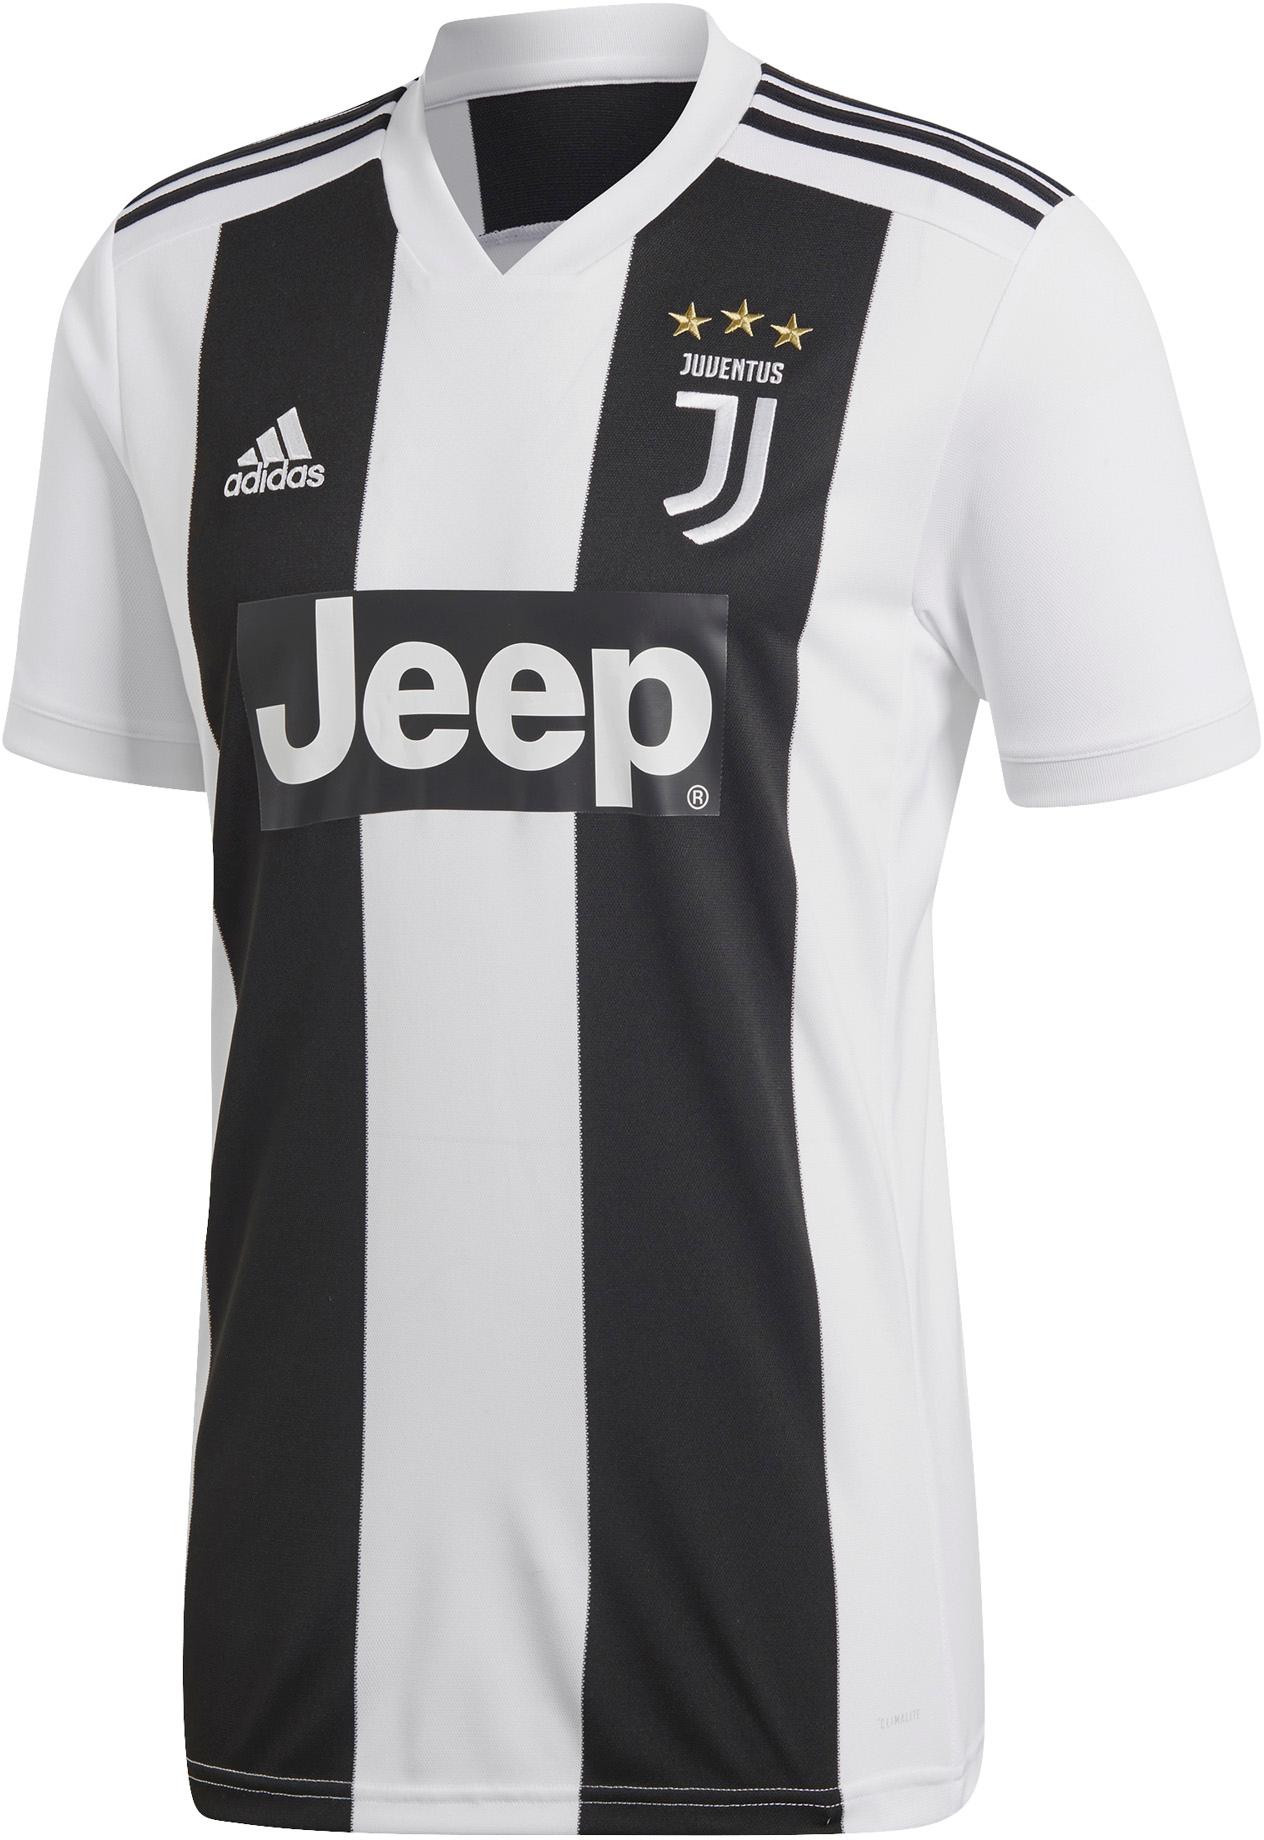 Adidas Juventus Turin 18 19 Heim Trikot Herren Black Im Online Shop Von Sportscheck Kaufen